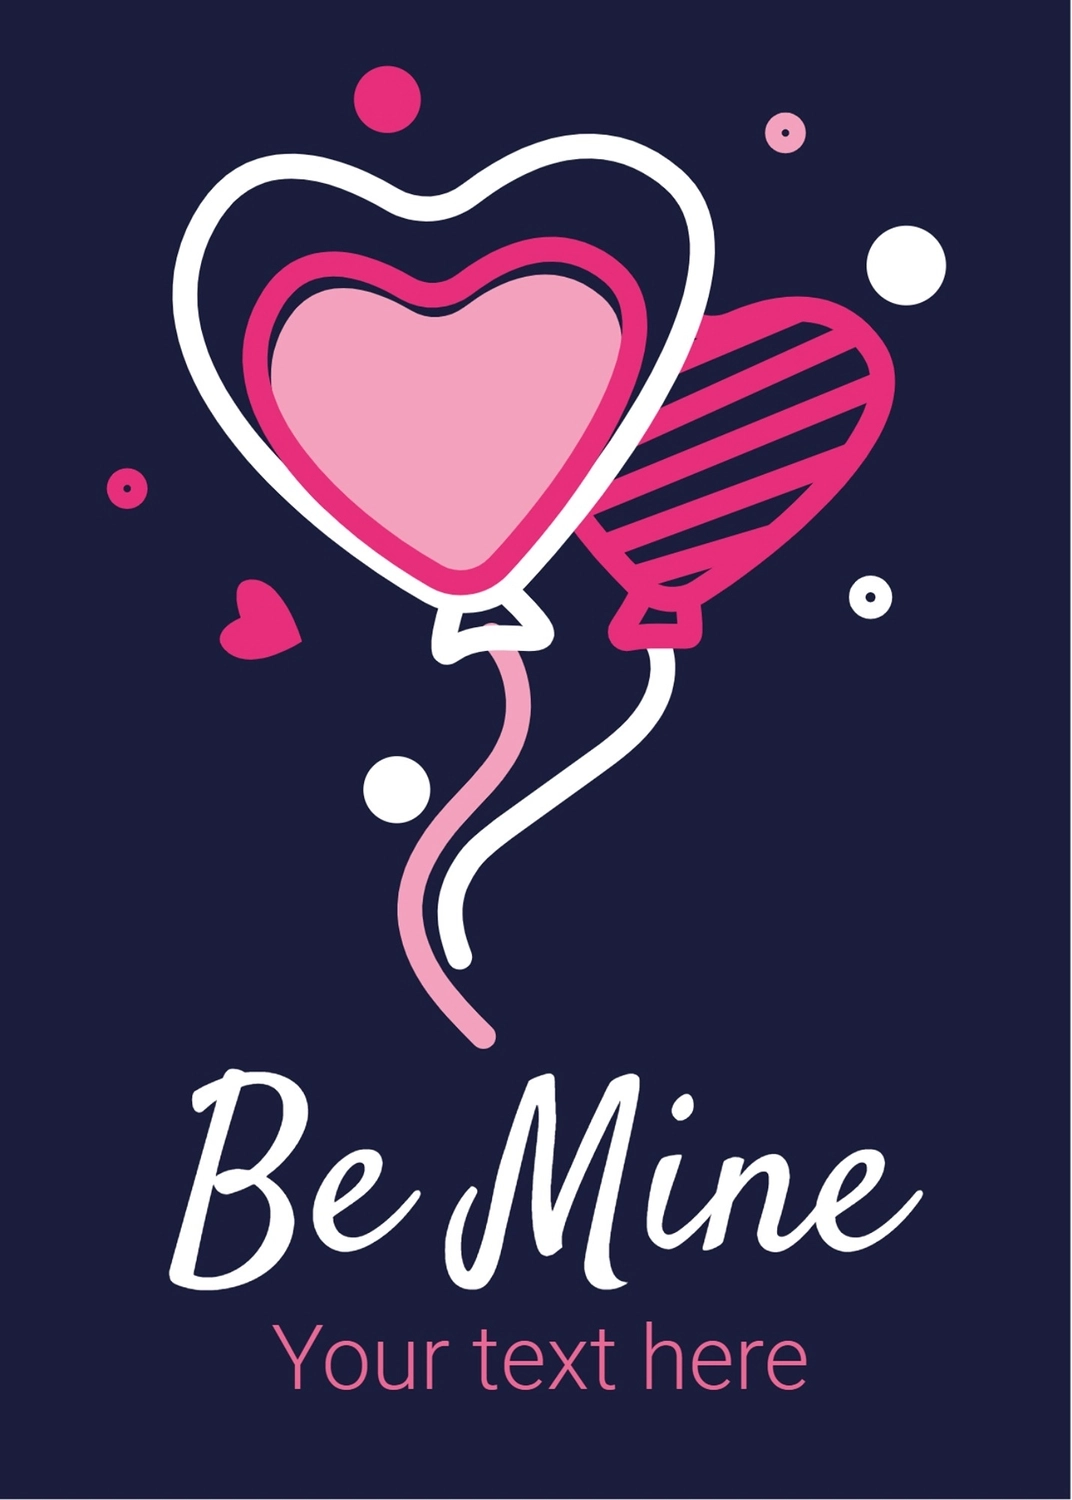 バレンタインデーグリーティングカード　ハートの風船, ハートの風船, 作成, デザイン, メッセージカードテンプレート